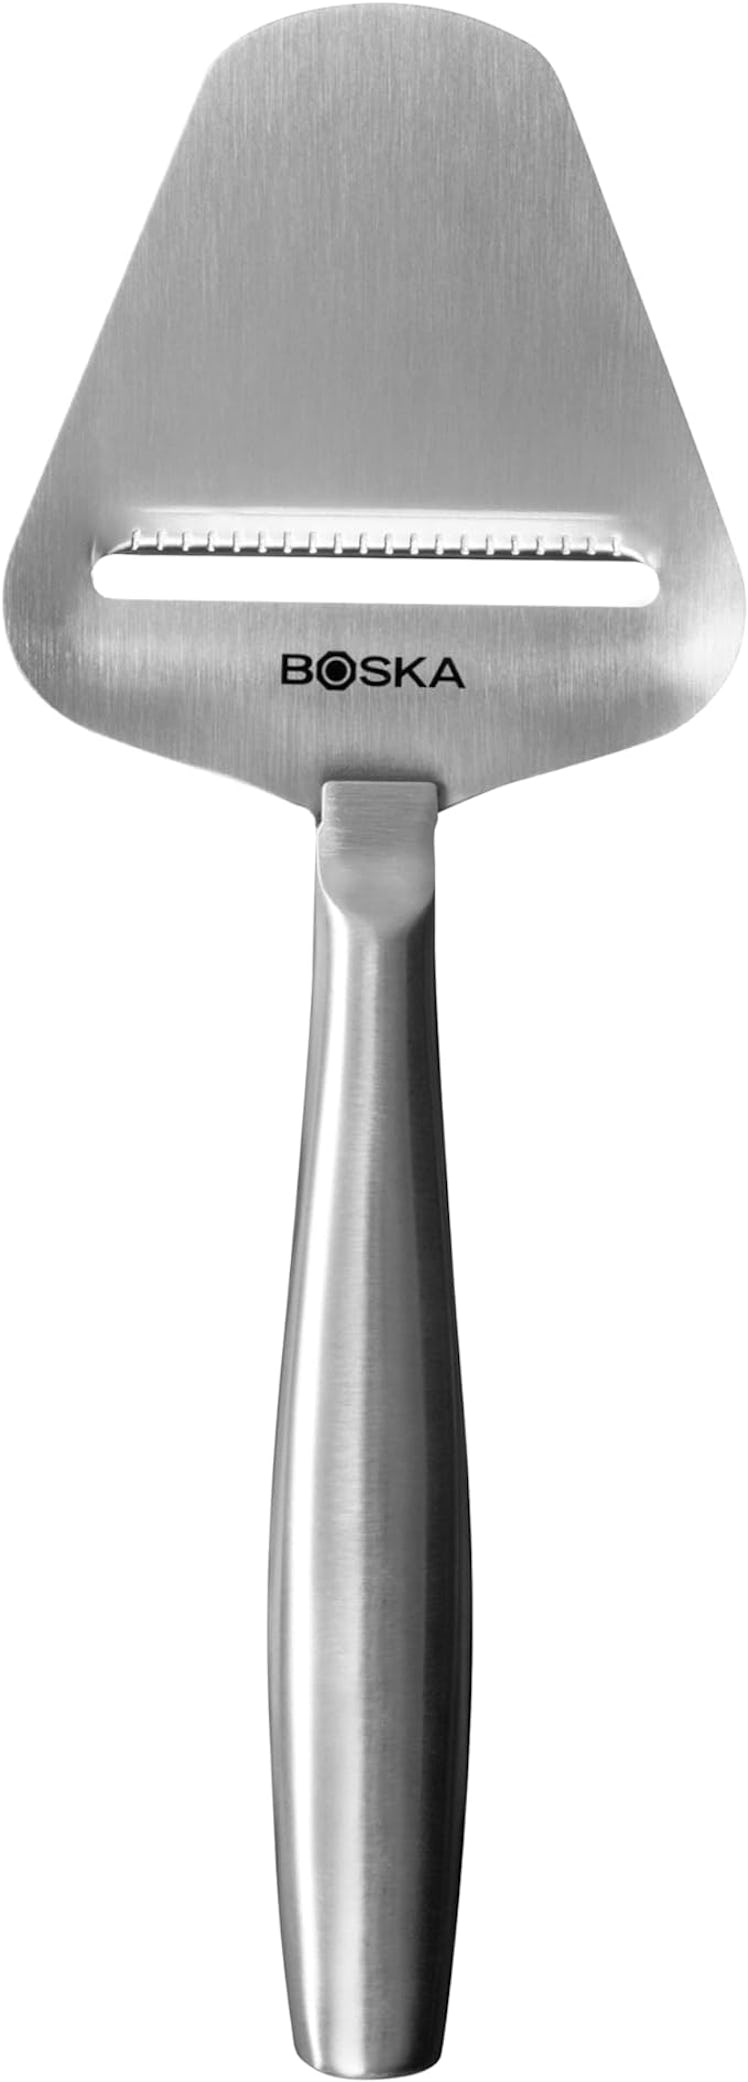 Boska Stainless Steel Cheese Slicer